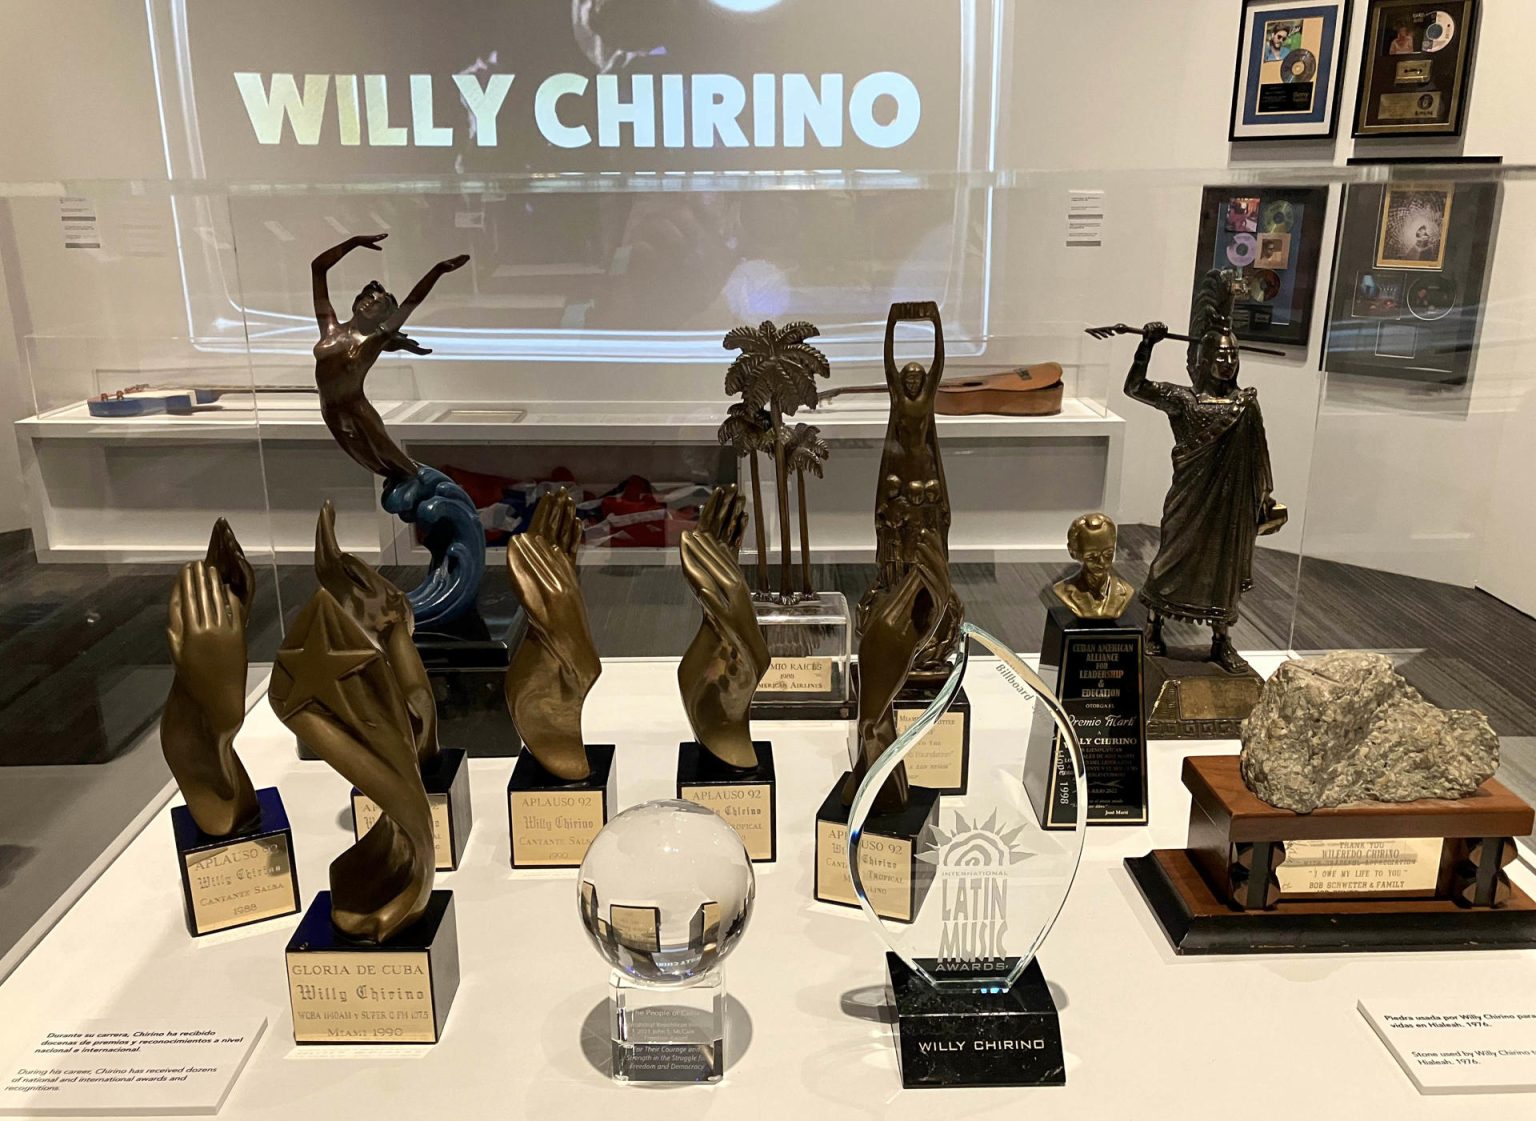 Fotografía de algunos de los premios ganados por el cantante cubano estadounidense Willy Chirino a lo largo de su carrera, mostrados durante la exposición "Willy Chirino: 50 años de música" hoy miércoles en el Museo de Historia en Miami, Florida (EEUU). EFE/Ana Mengotti